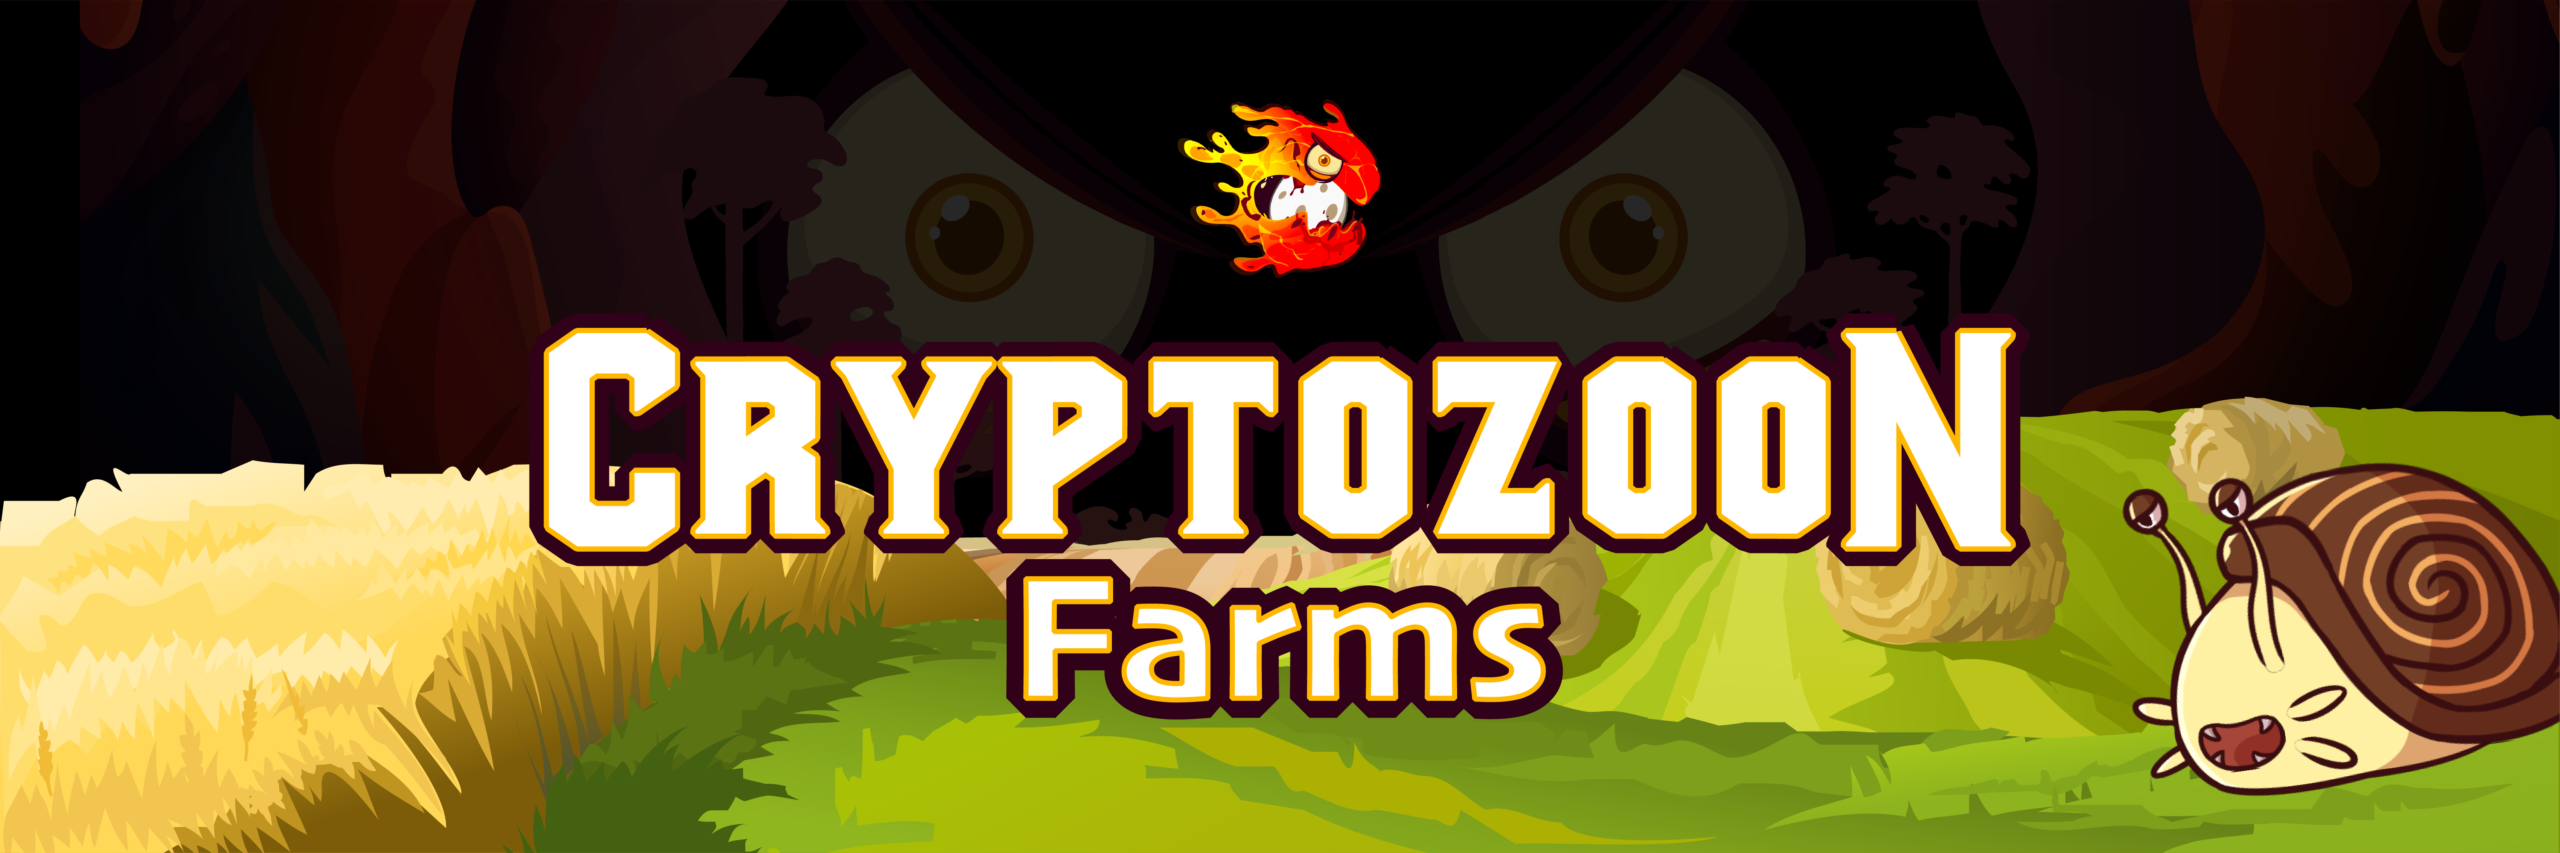 farm cryptozoon